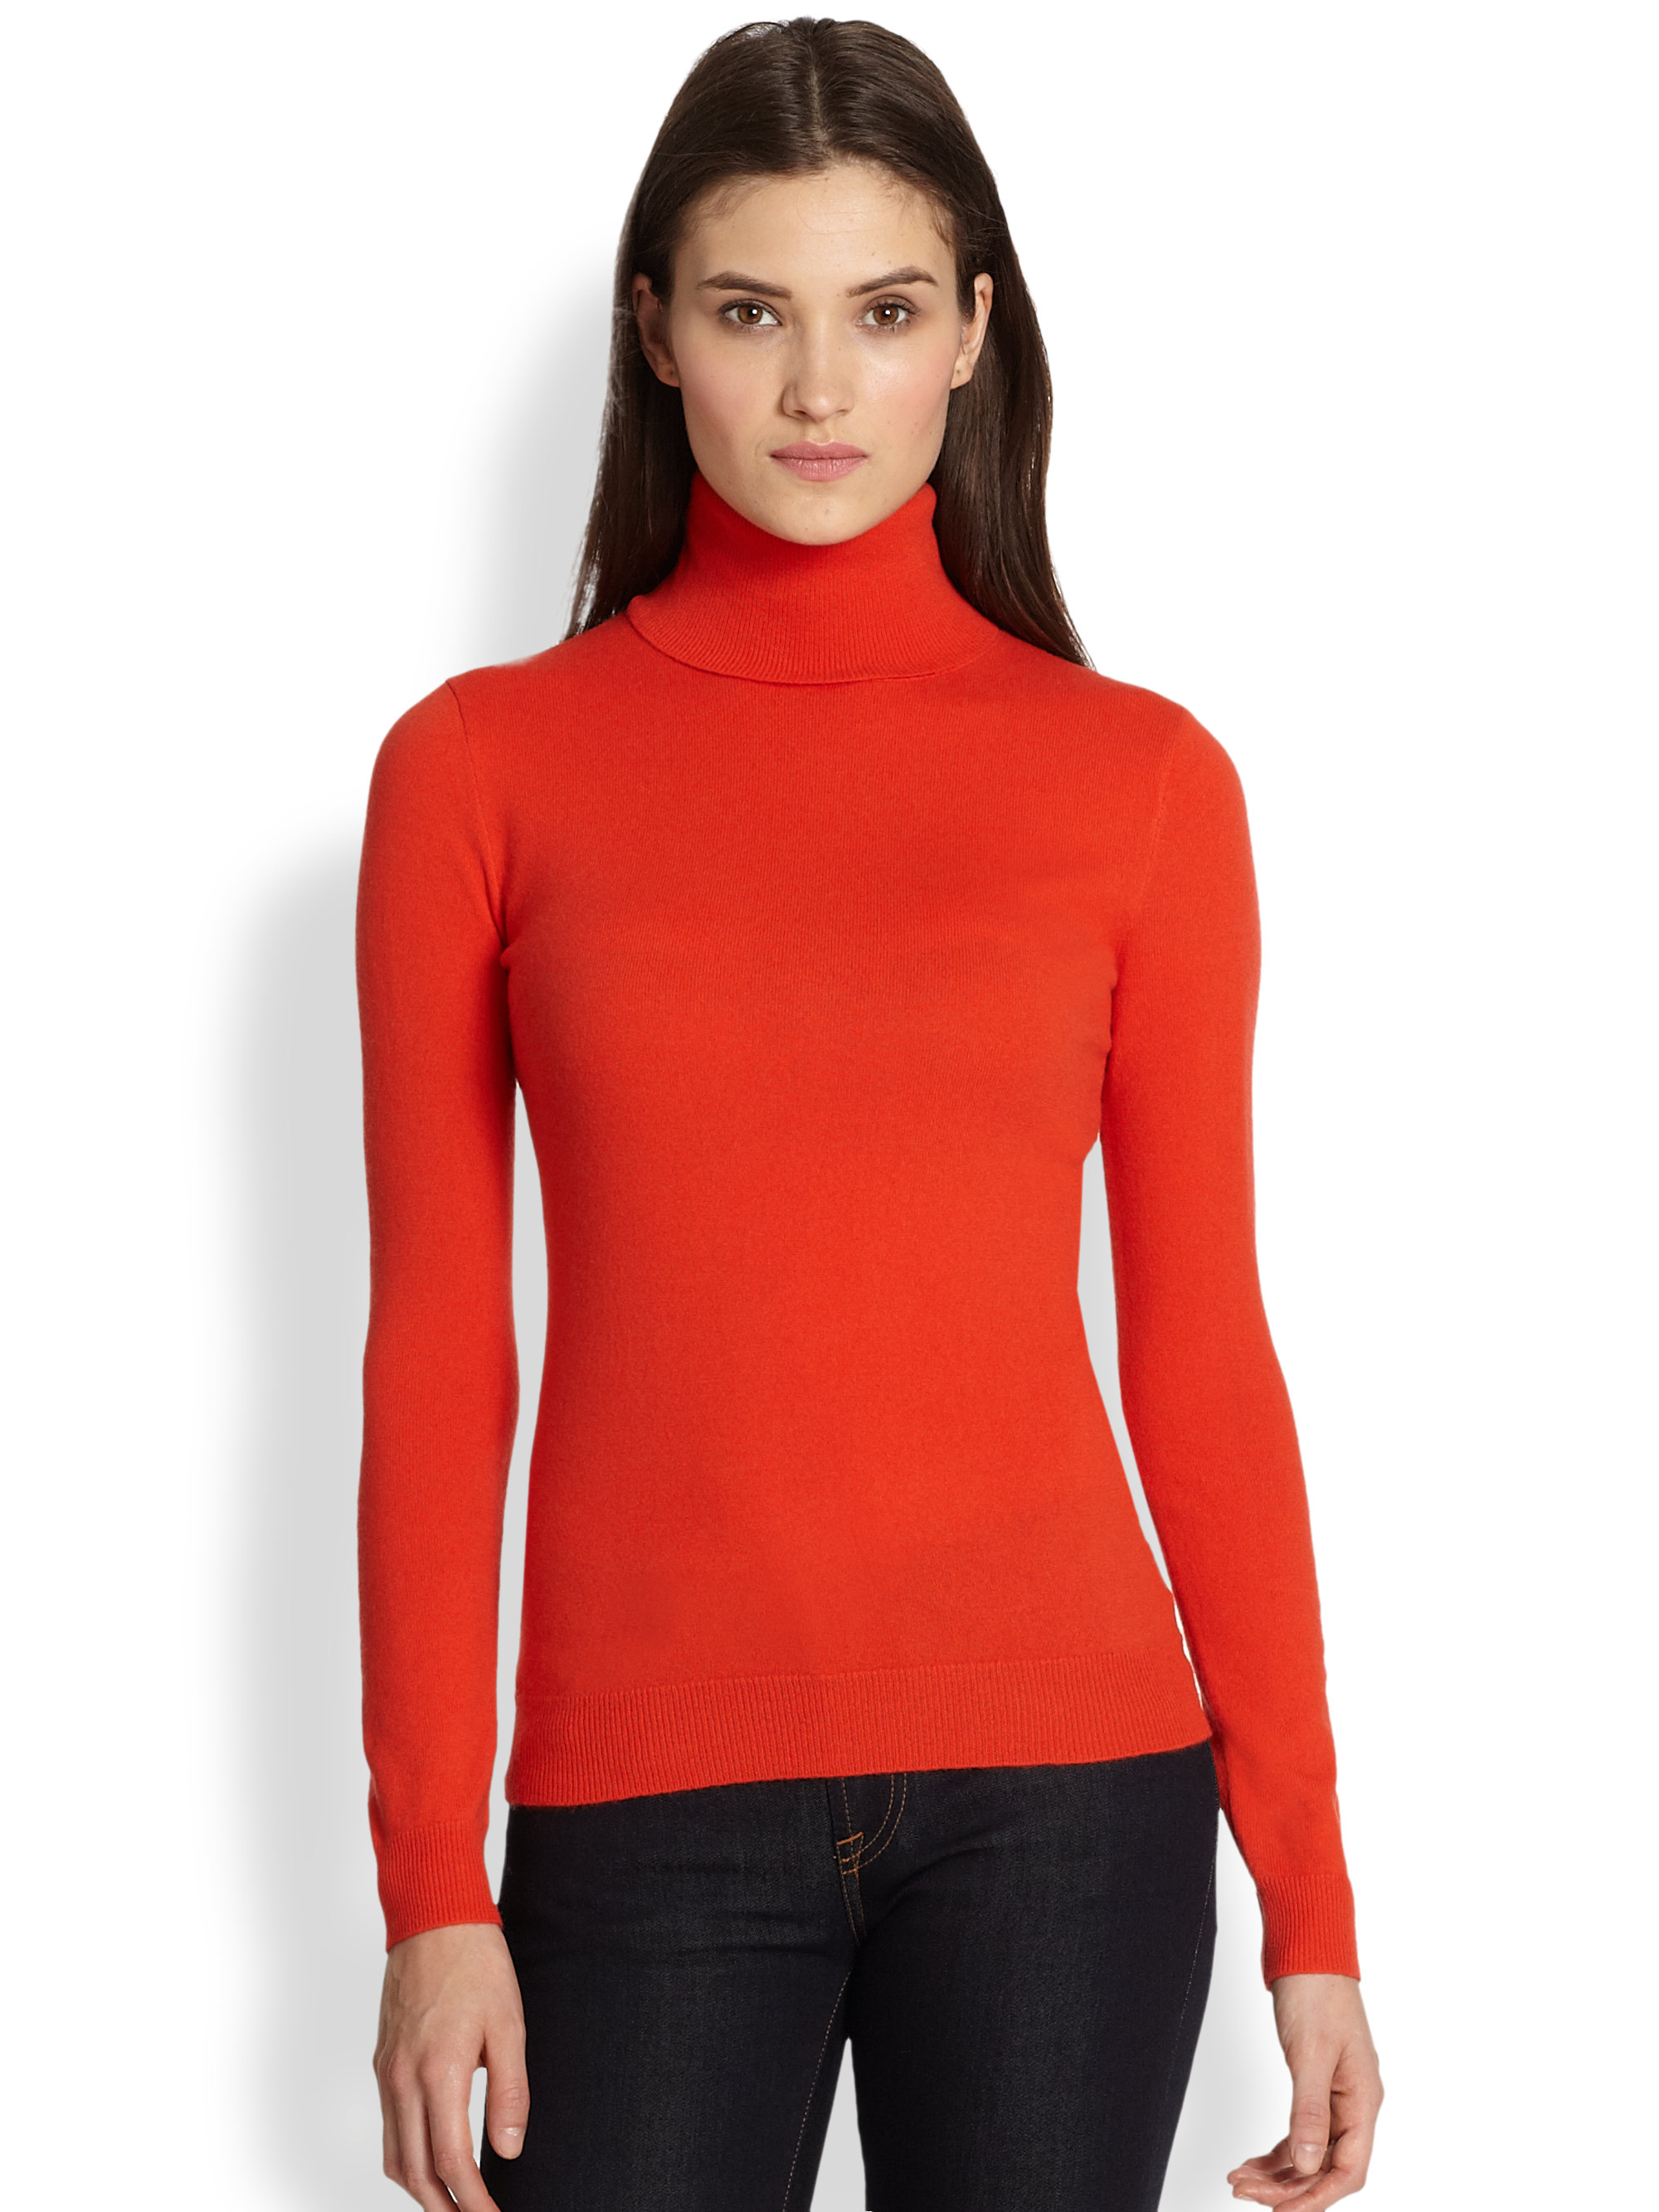 Ralph Lauren Black Label Cashmere Turtleneck Sweater in Orange (Red) - Lyst